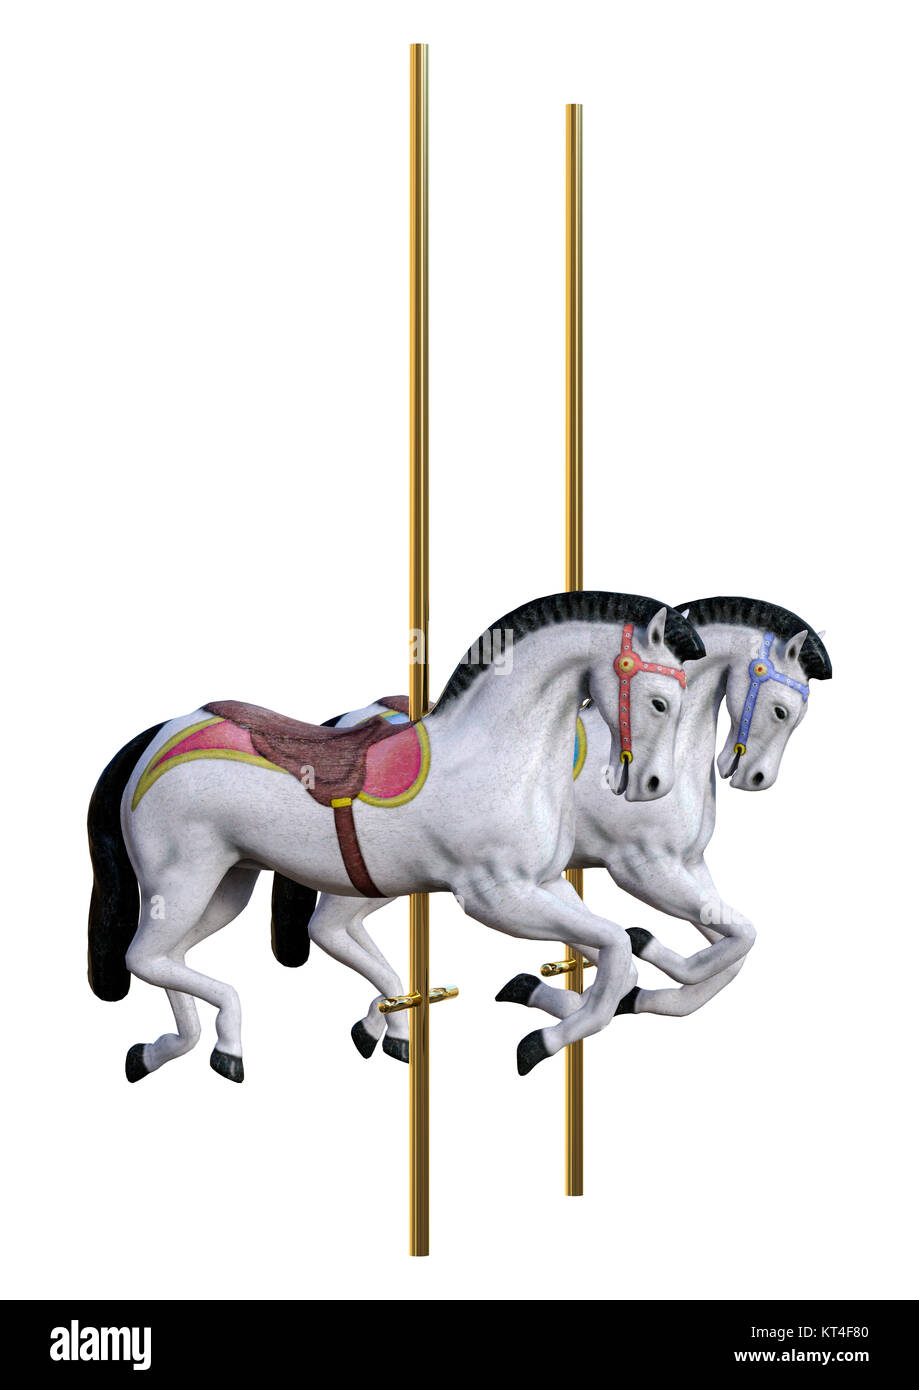 3D Rendering Carousel Horses on White Stock Photo